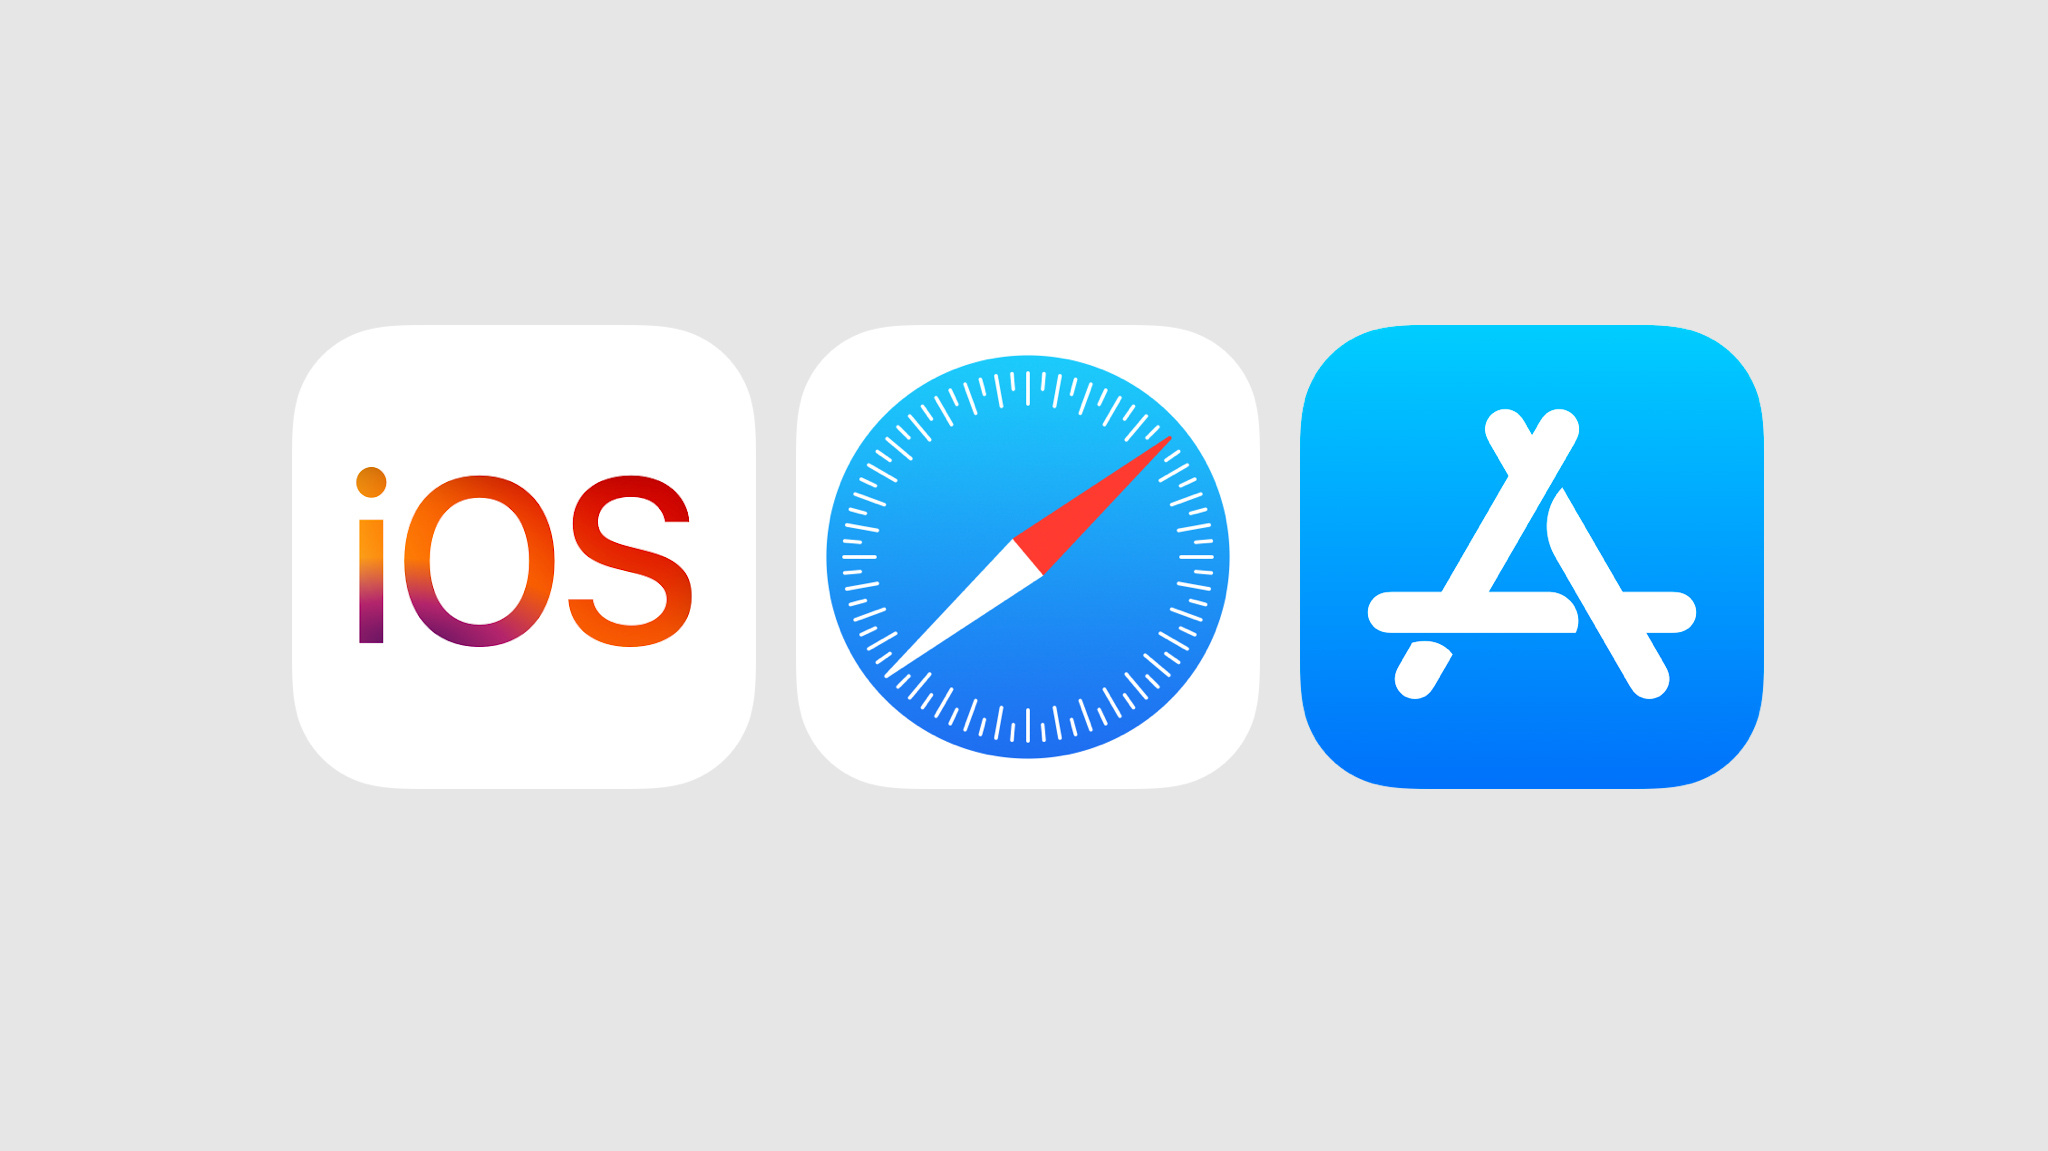 연한 회색 배경에 iOS, Safari, App Store 아이콘이 표시되어 있습니다.